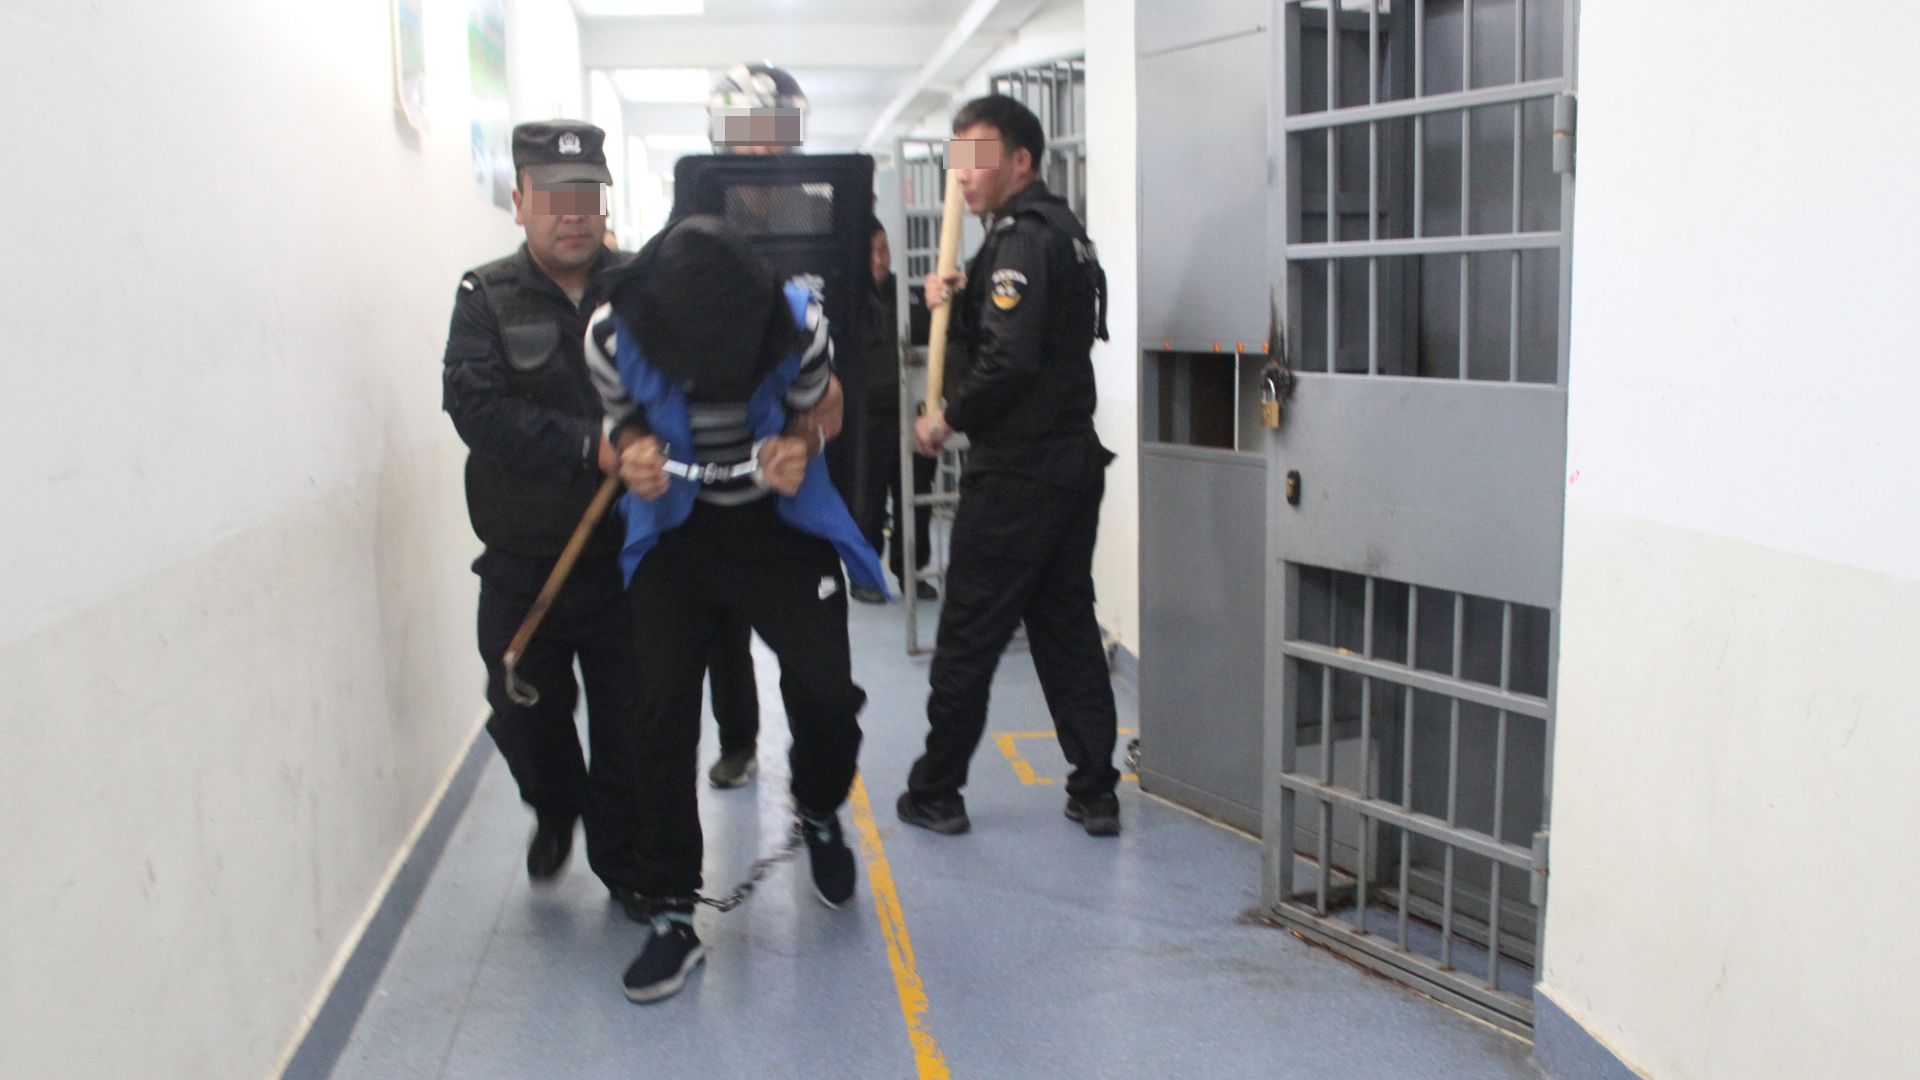 Tahta sopalarla donanmış güvenlik güçleri, kelepçeli ve ayak bileği kelepçeli bir tutukluyu uzaklaştırıyor.  |  Sincan Polis Dosyaları